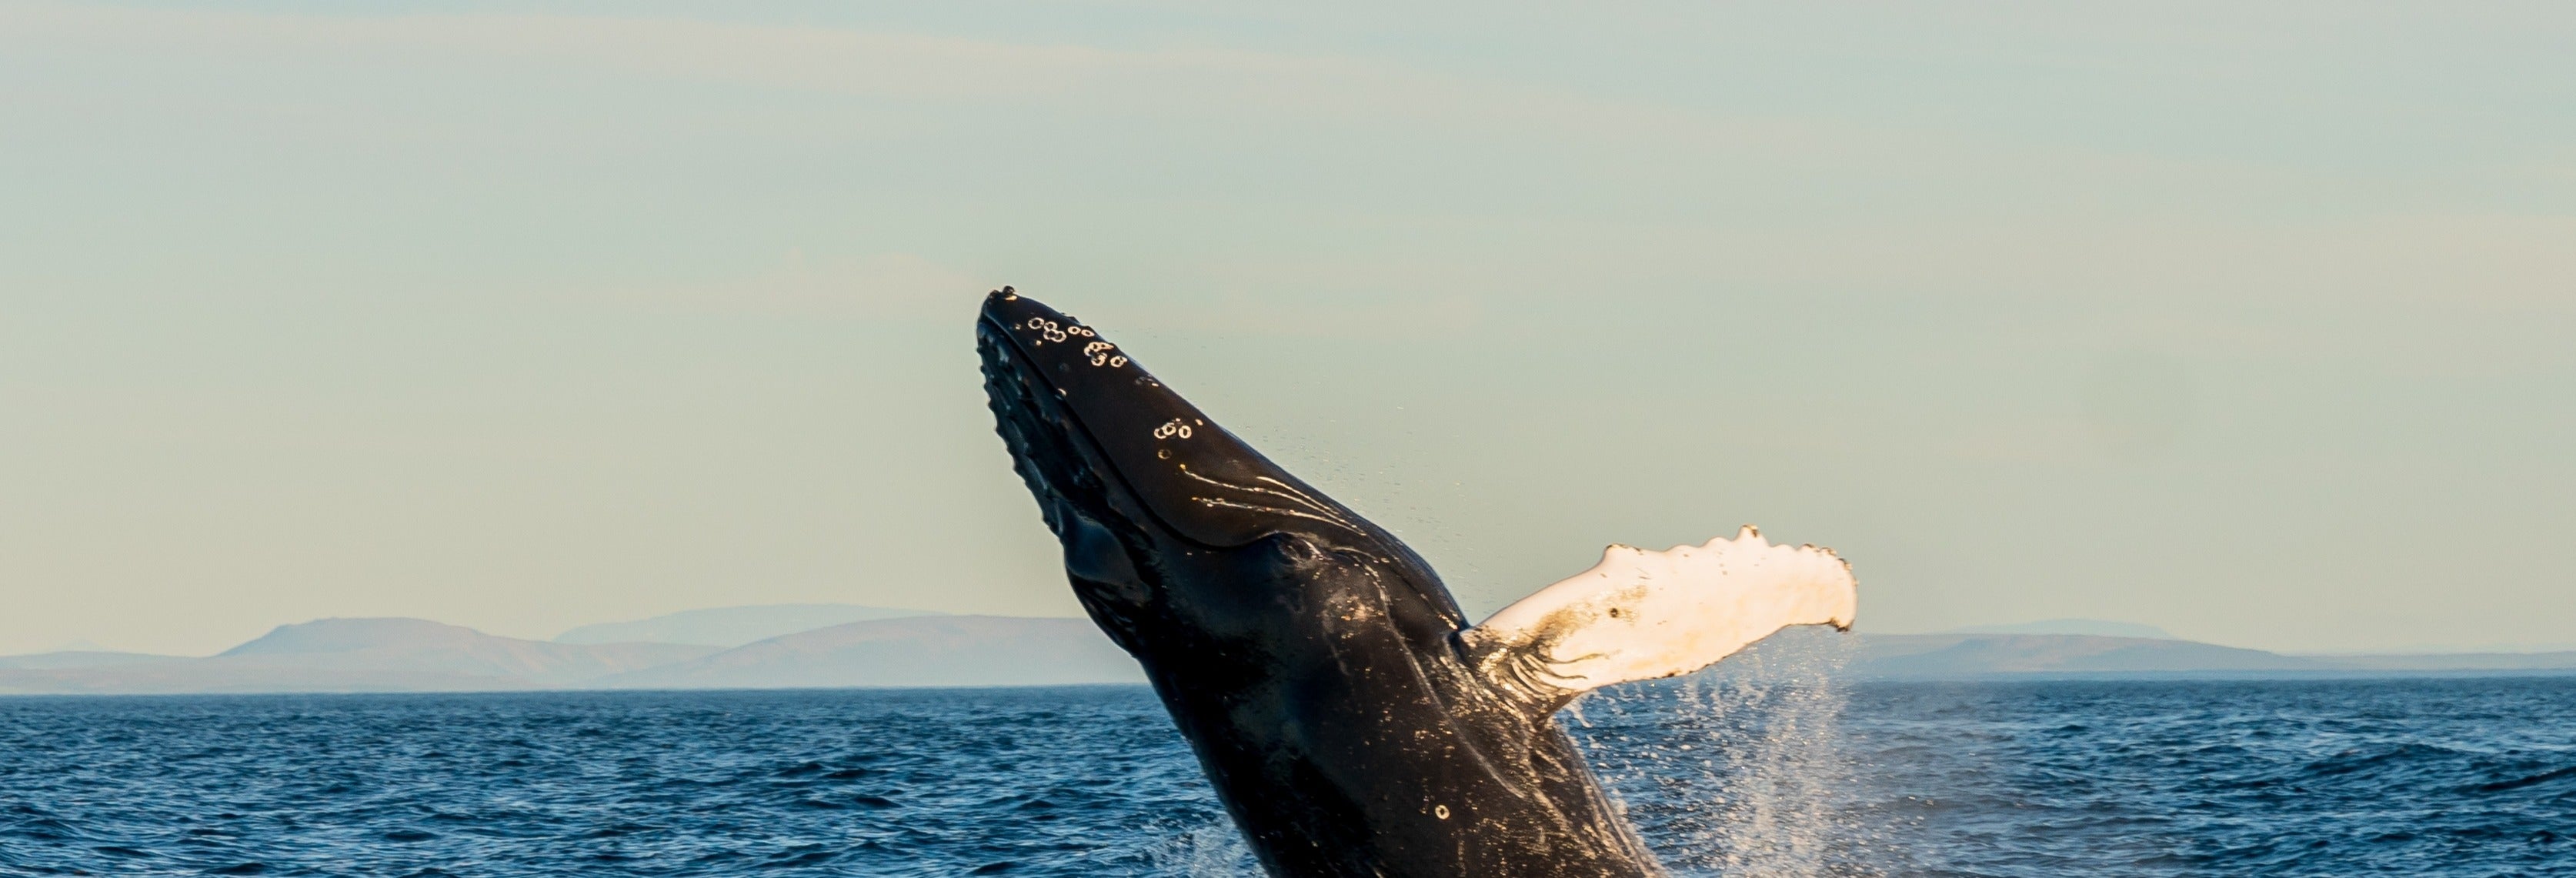 Avistamiento de ballenas en goleta